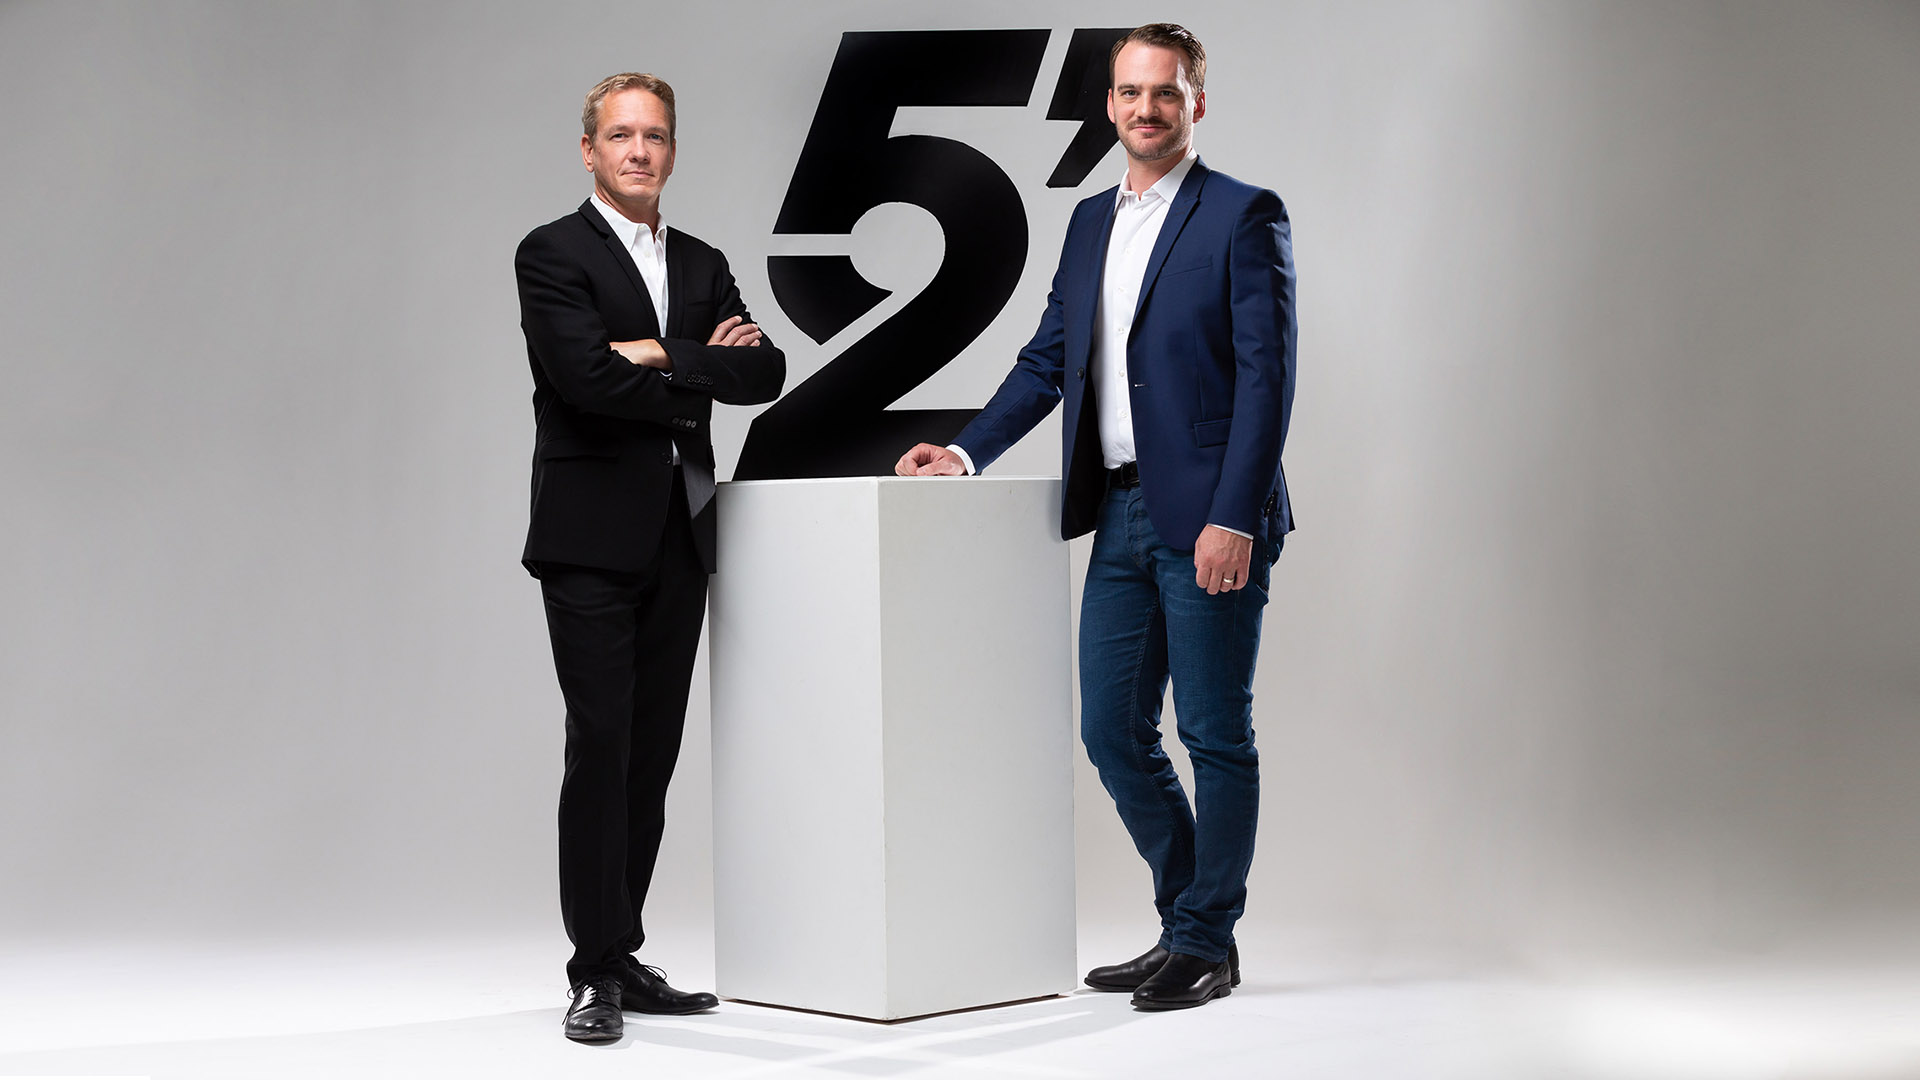 L'émission 52 minutes, présenté par Vincent Veillon et Vincent Kucholl, sera diffusée toutes les deux semaines, le samedi à 20h10.